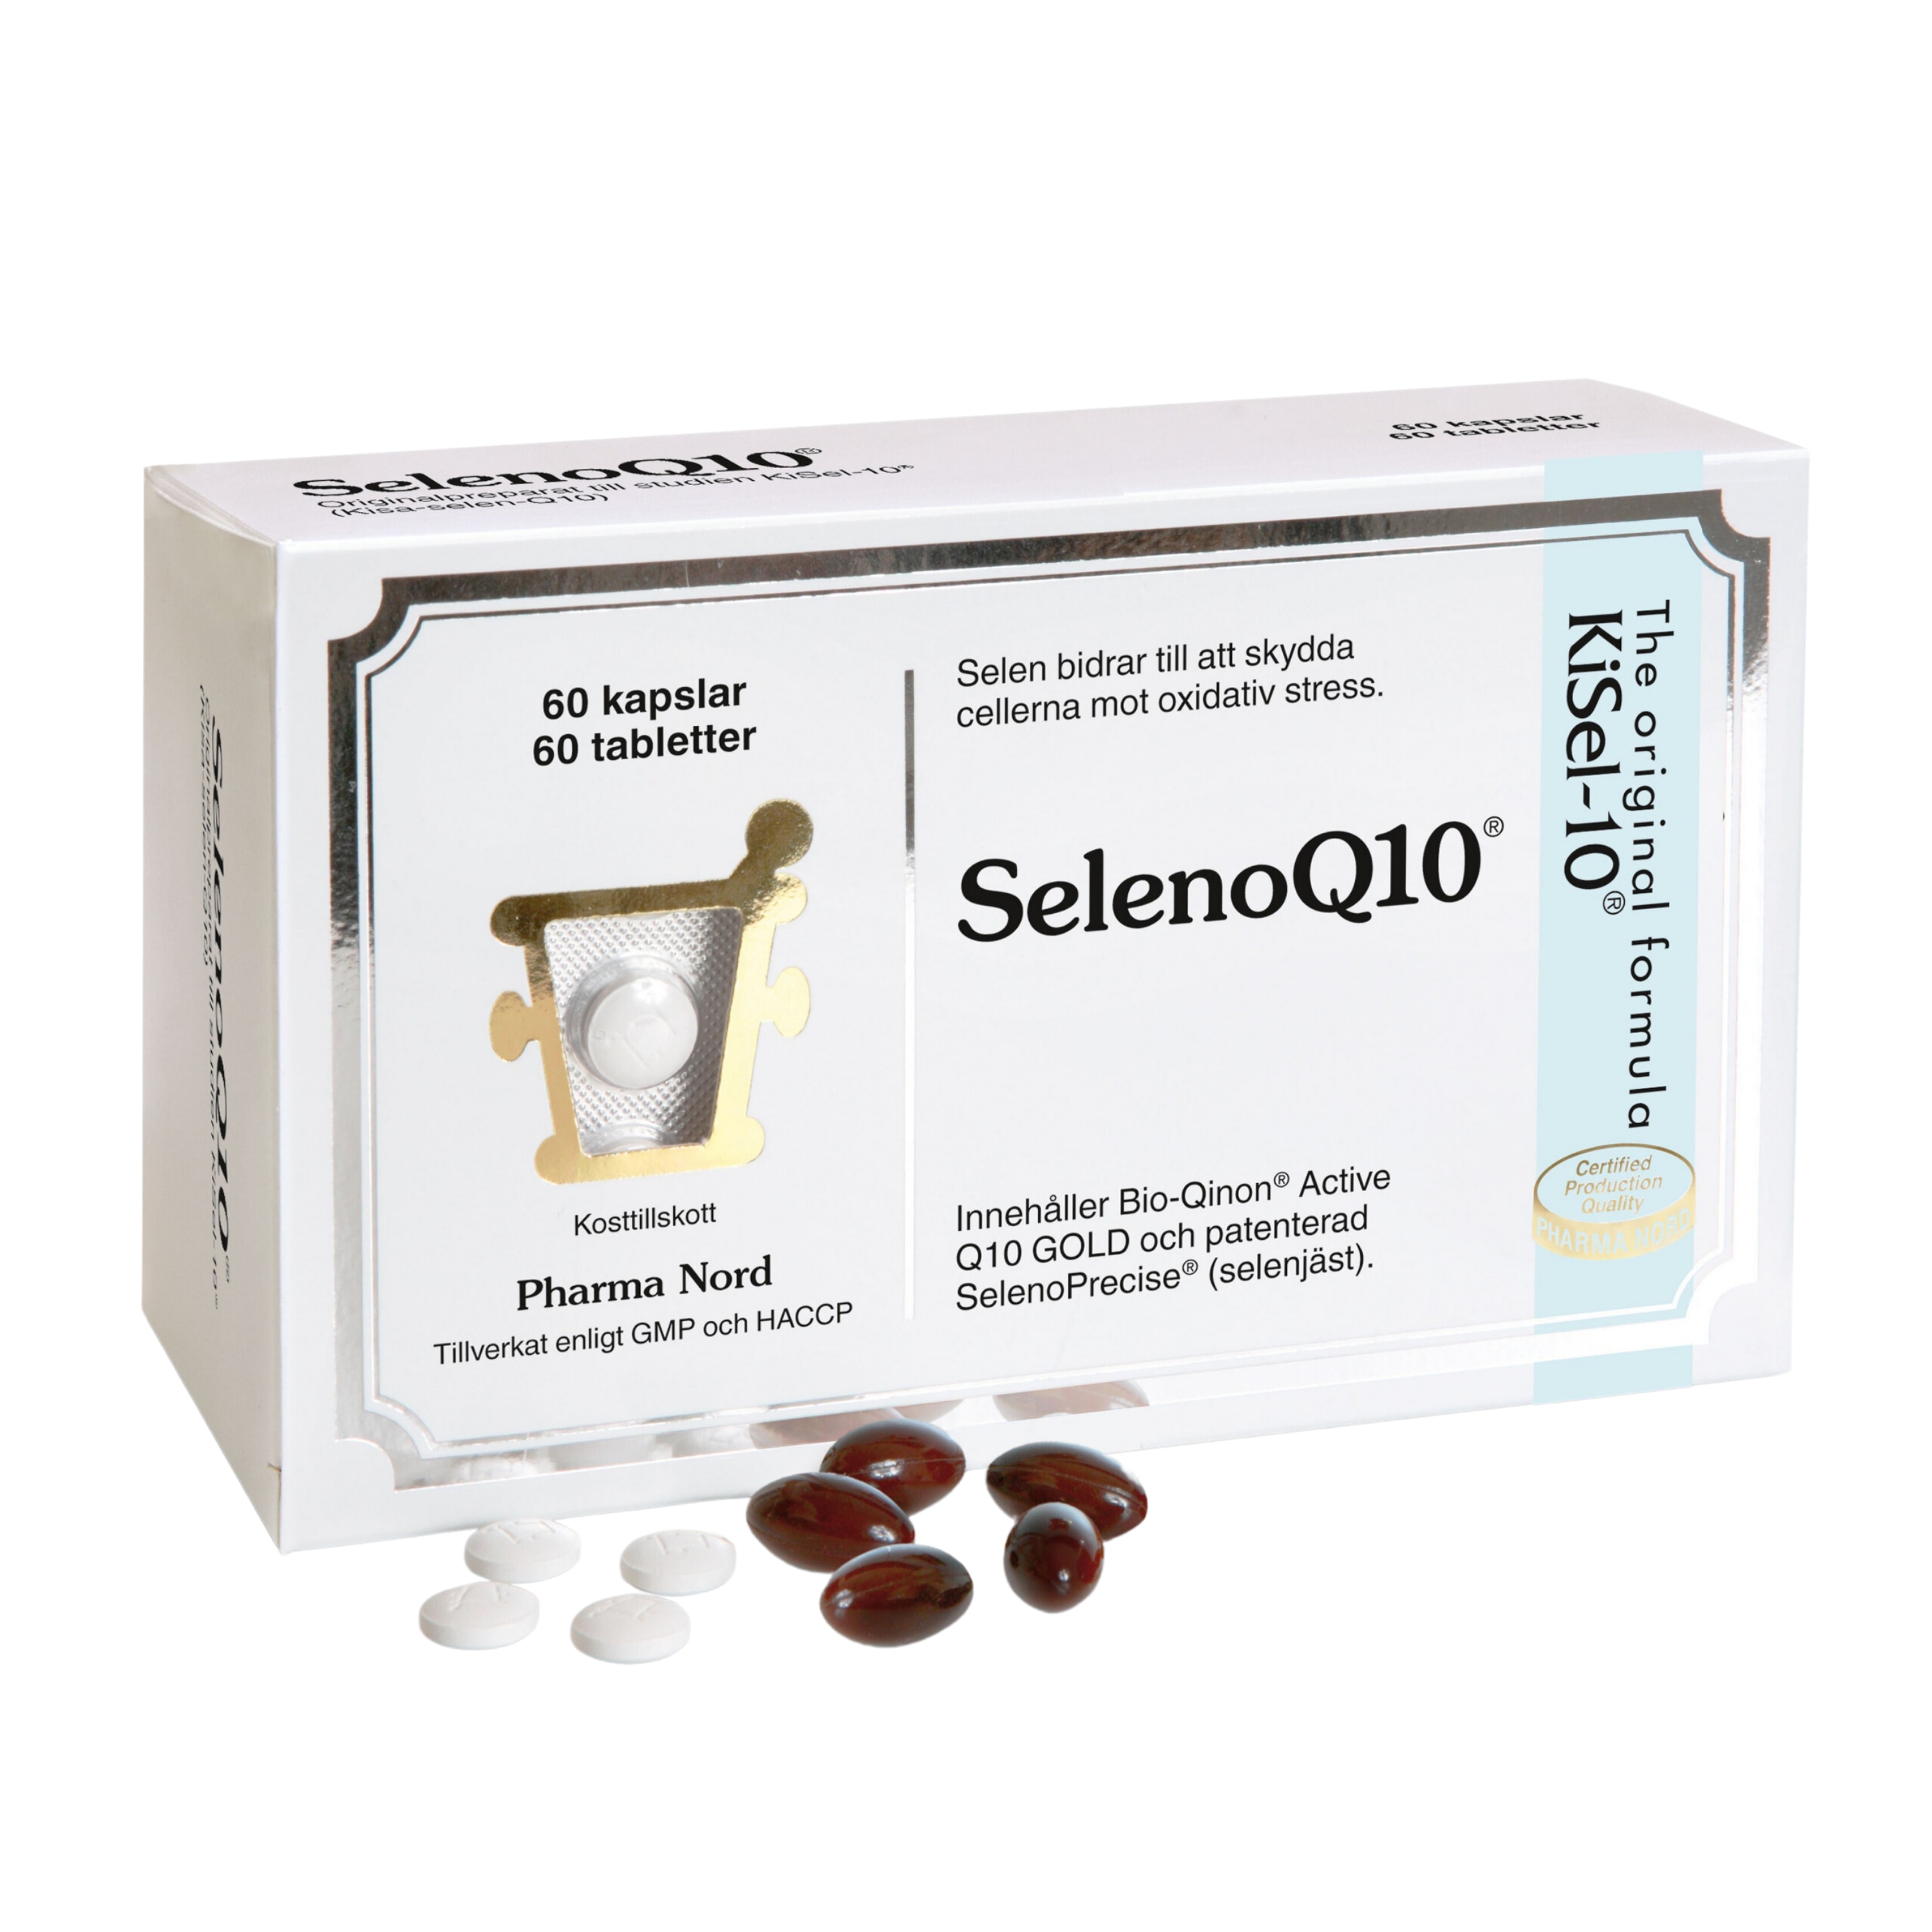 SelenoQ10 60k + 60t